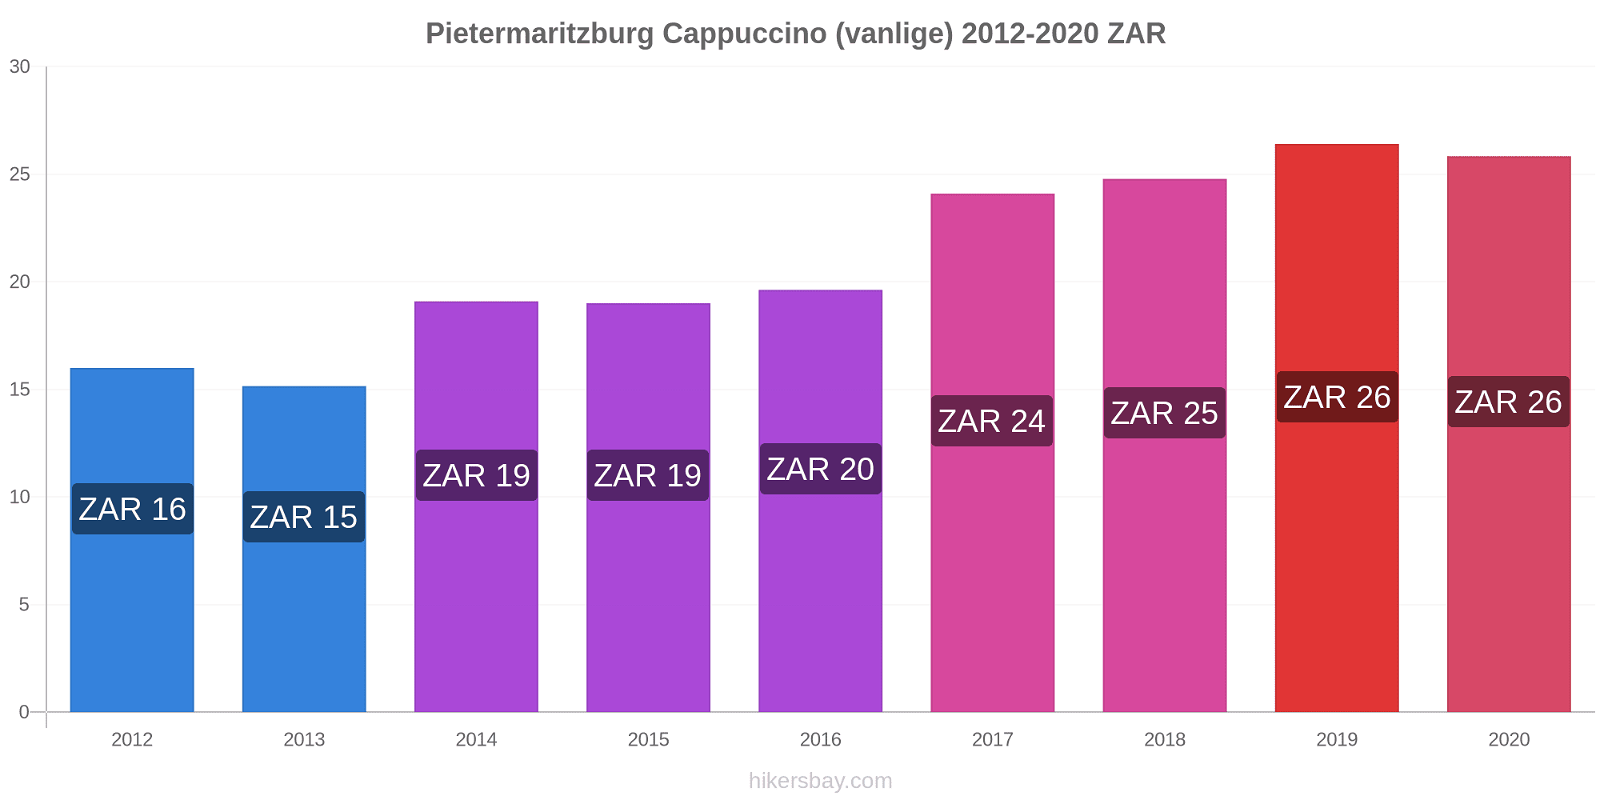 Pietermaritzburg prisendringer Cappuccino (vanlige) hikersbay.com